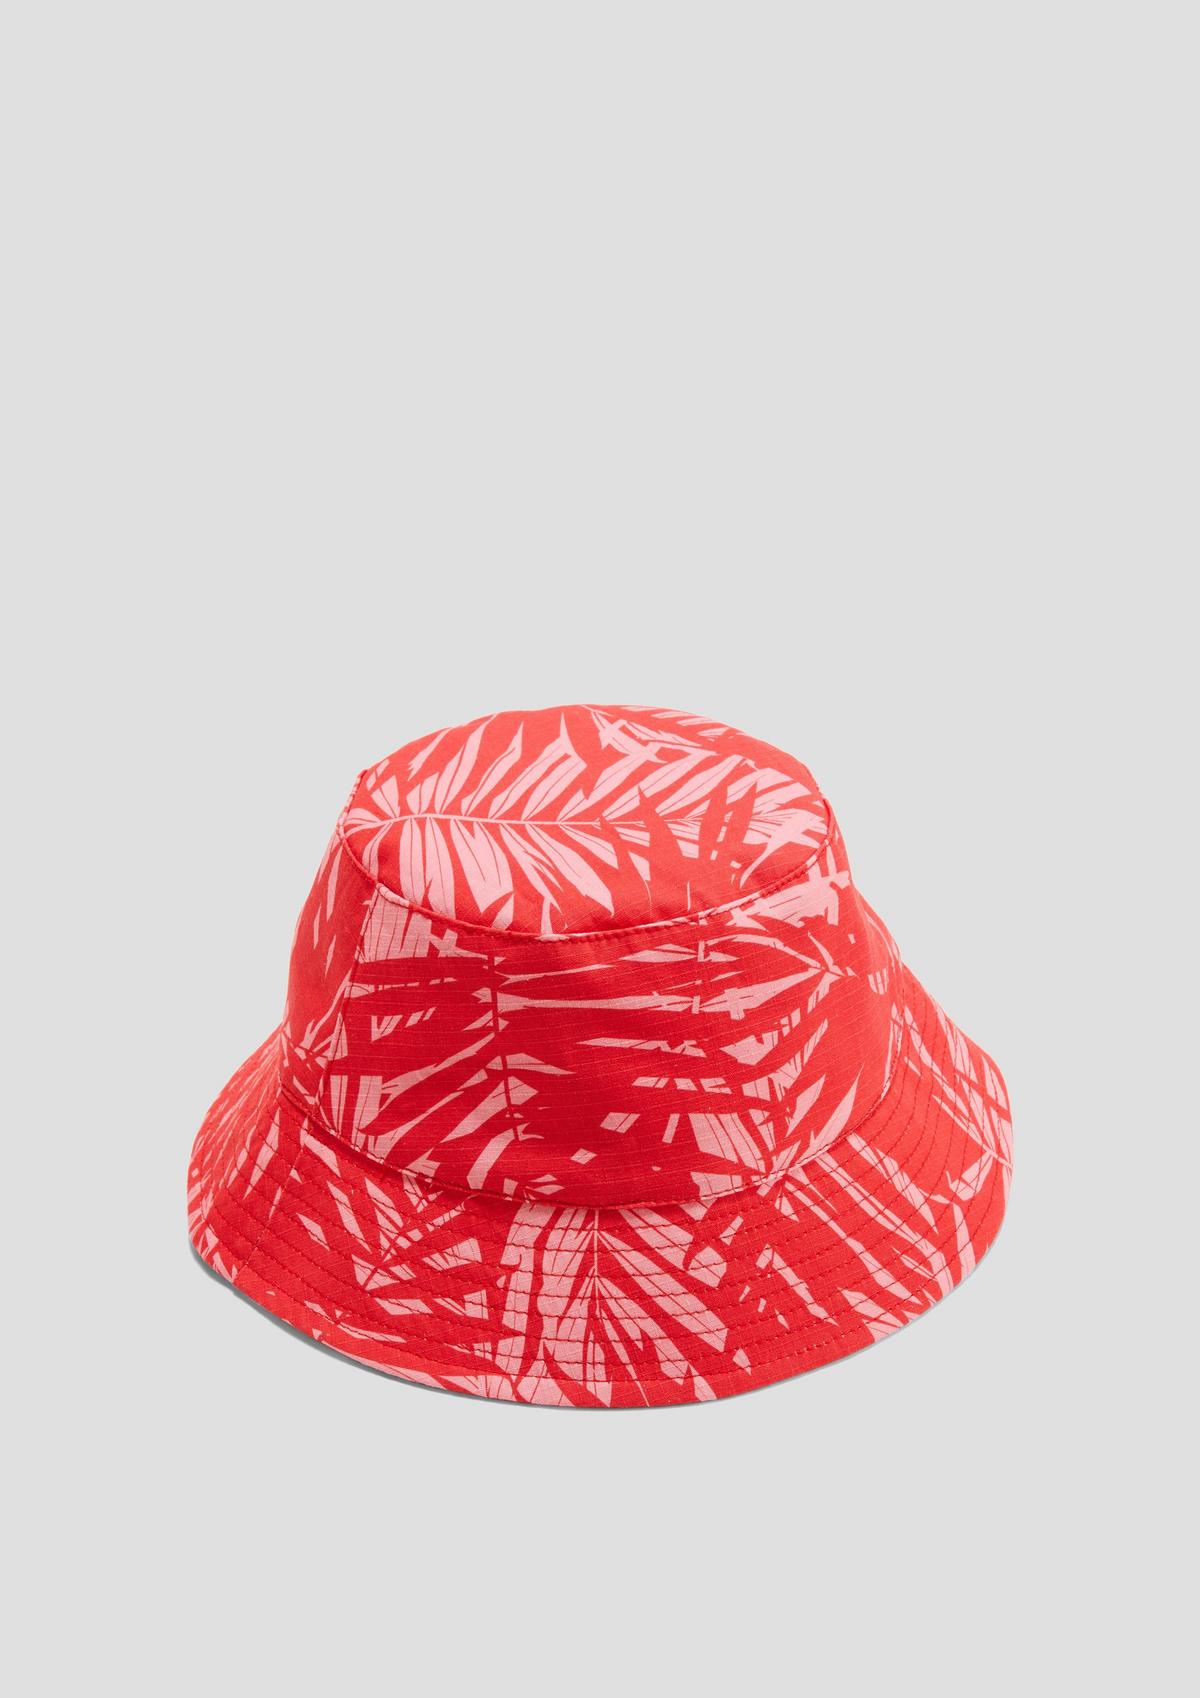 Ribički šešir s printom po čitavoj površini